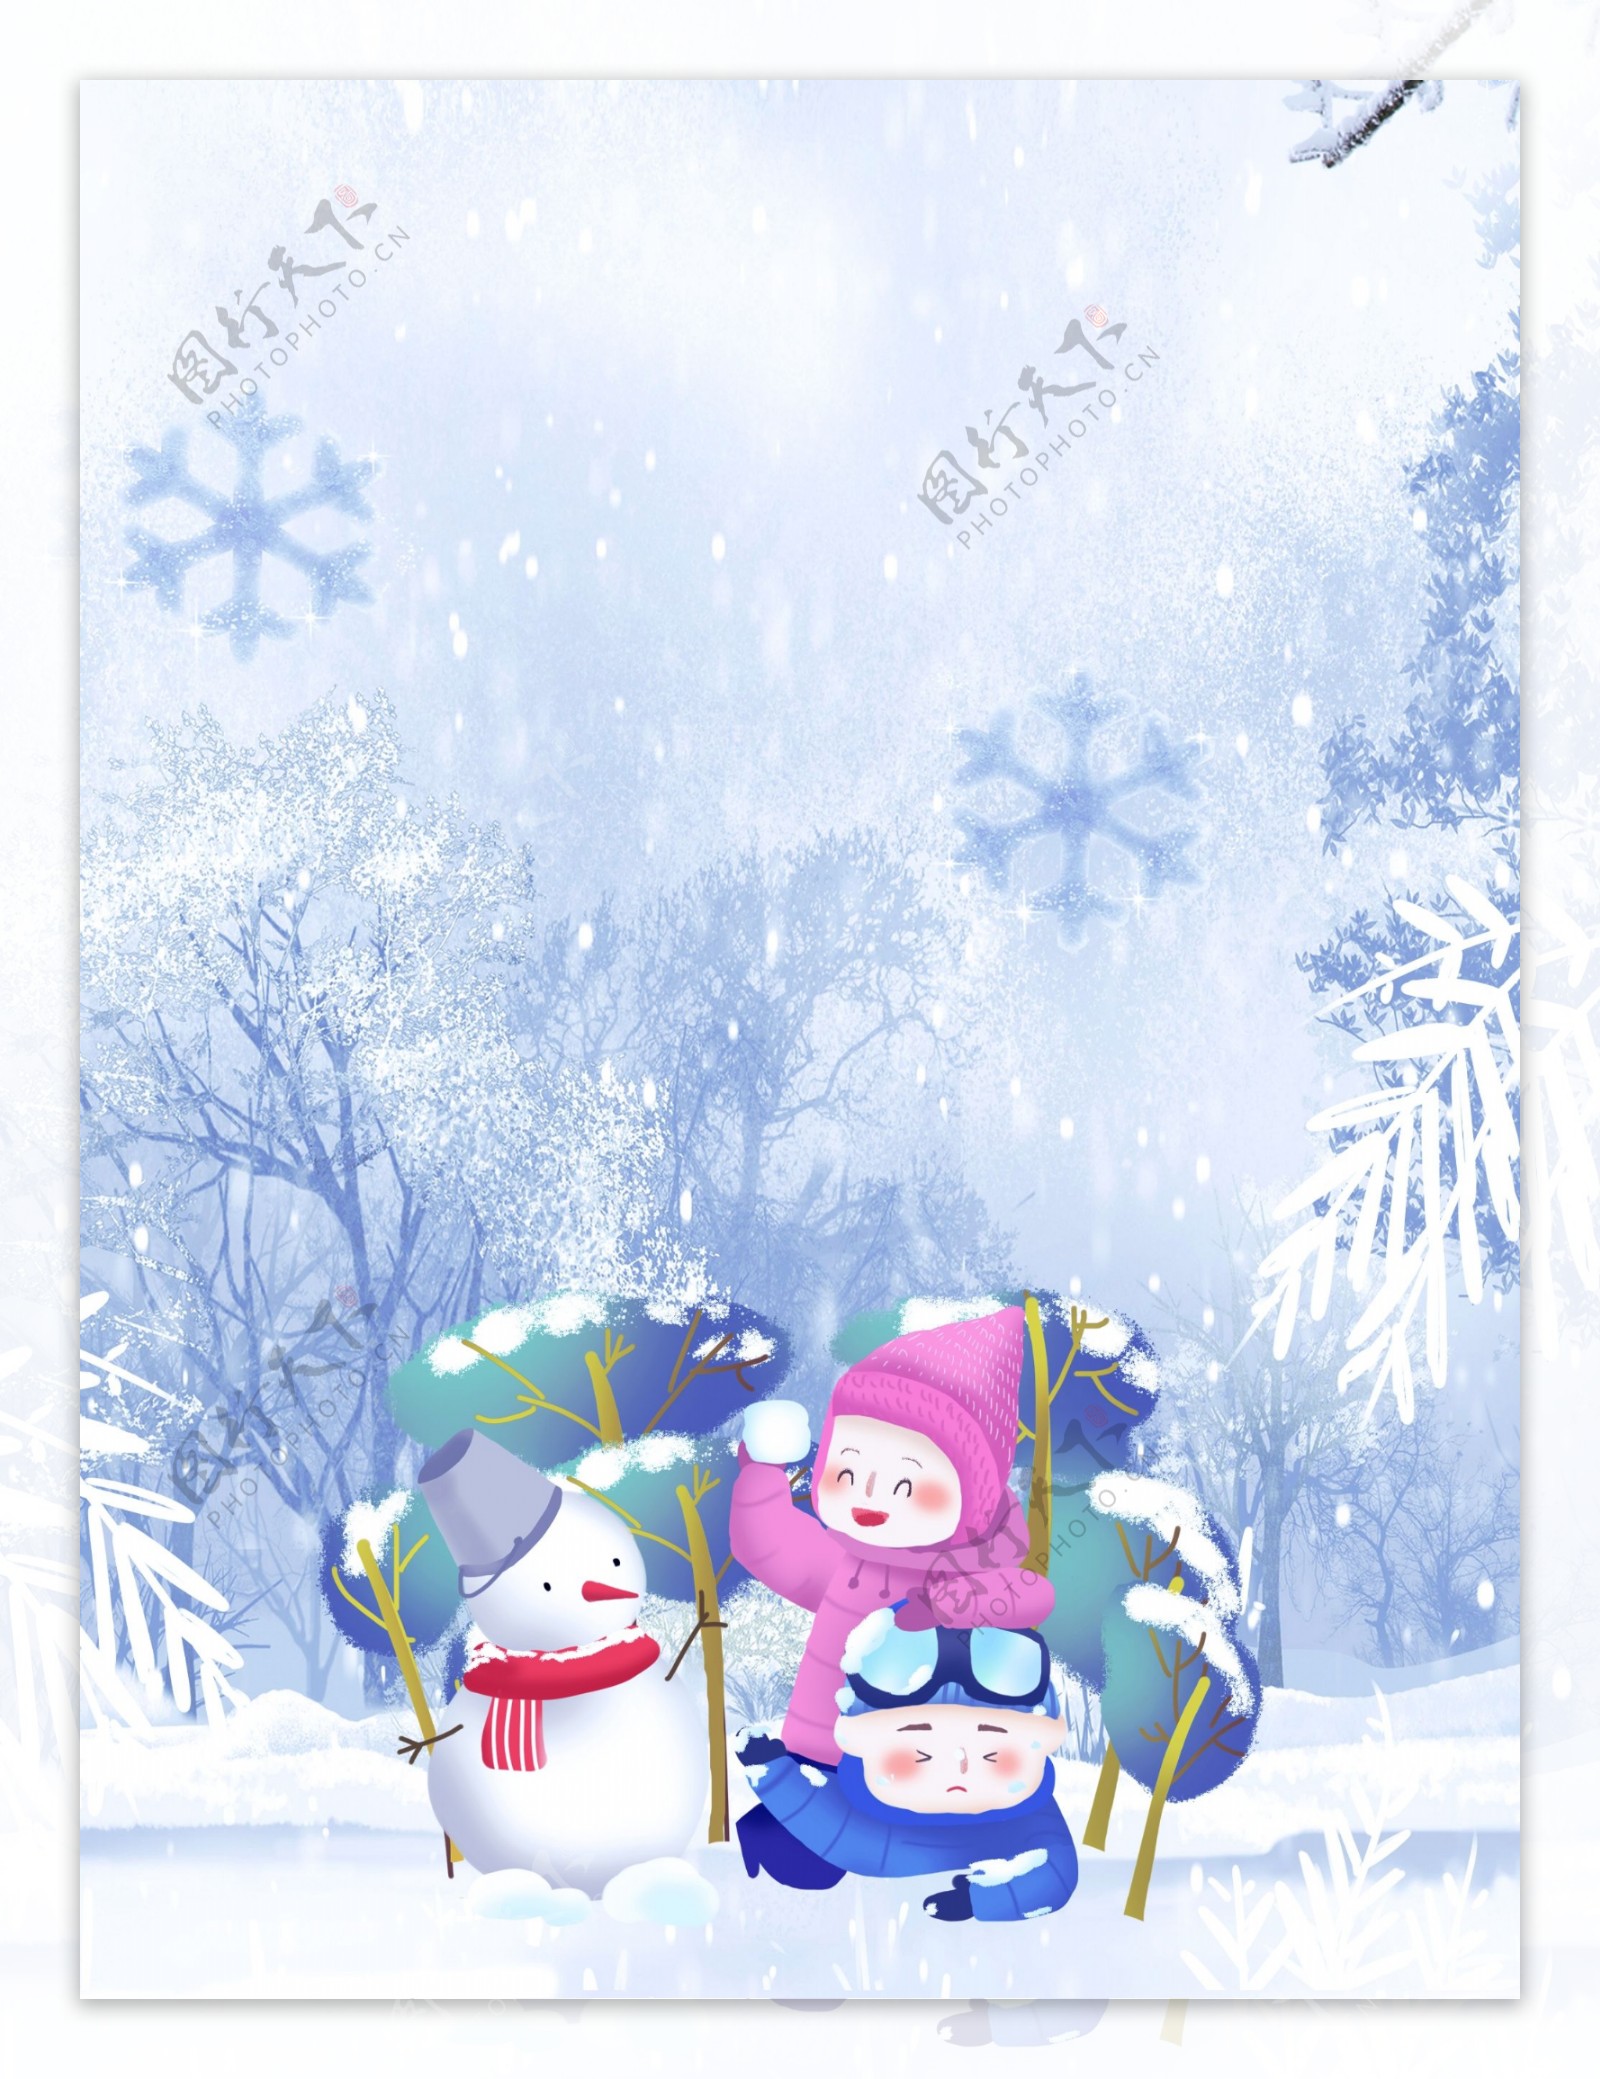 彩绘大雪节气雪人背景设计